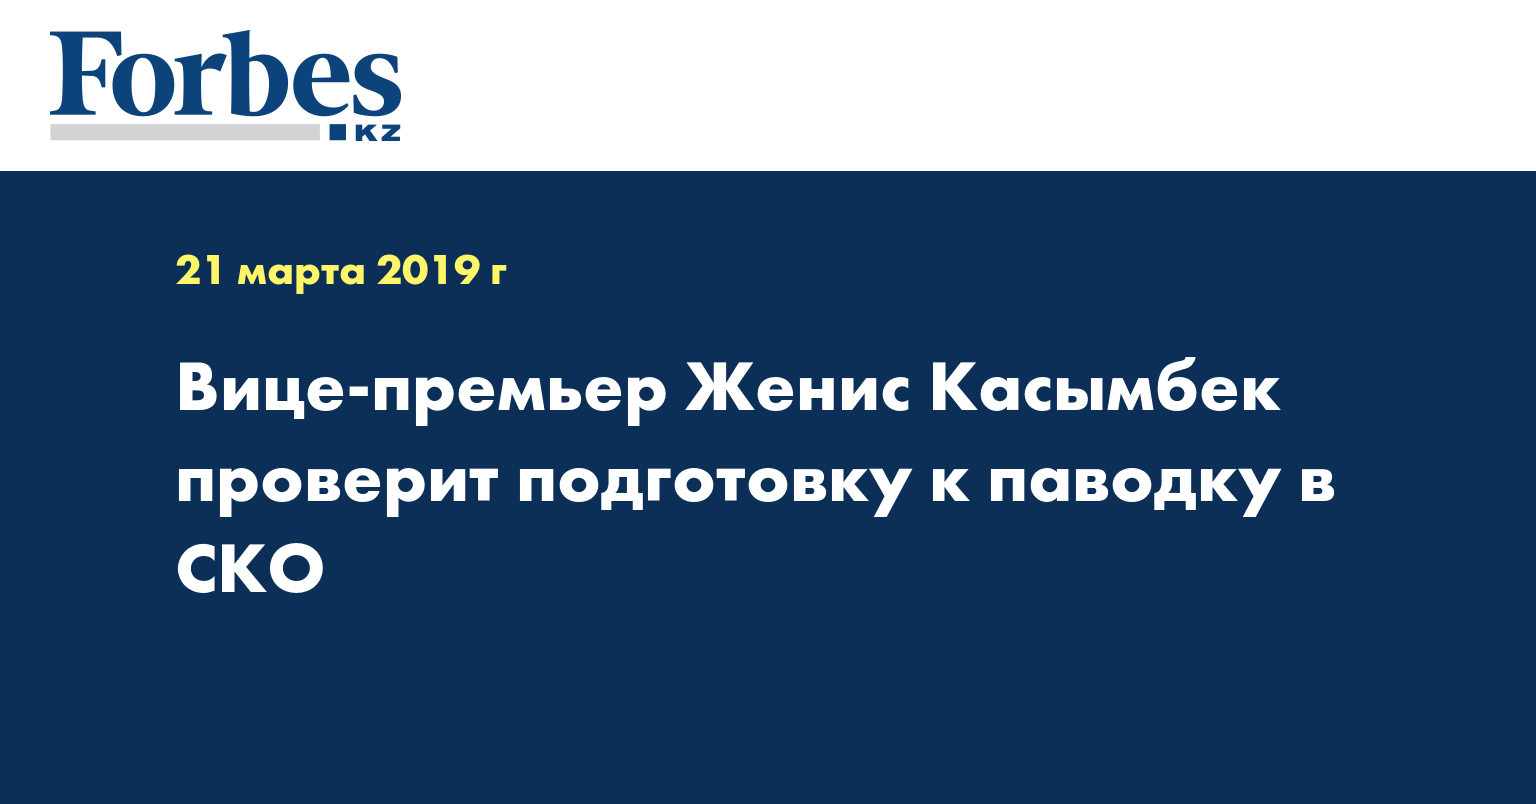 Вице-премьер Женис Касымбек проверит подготовку к паводку в СКО  